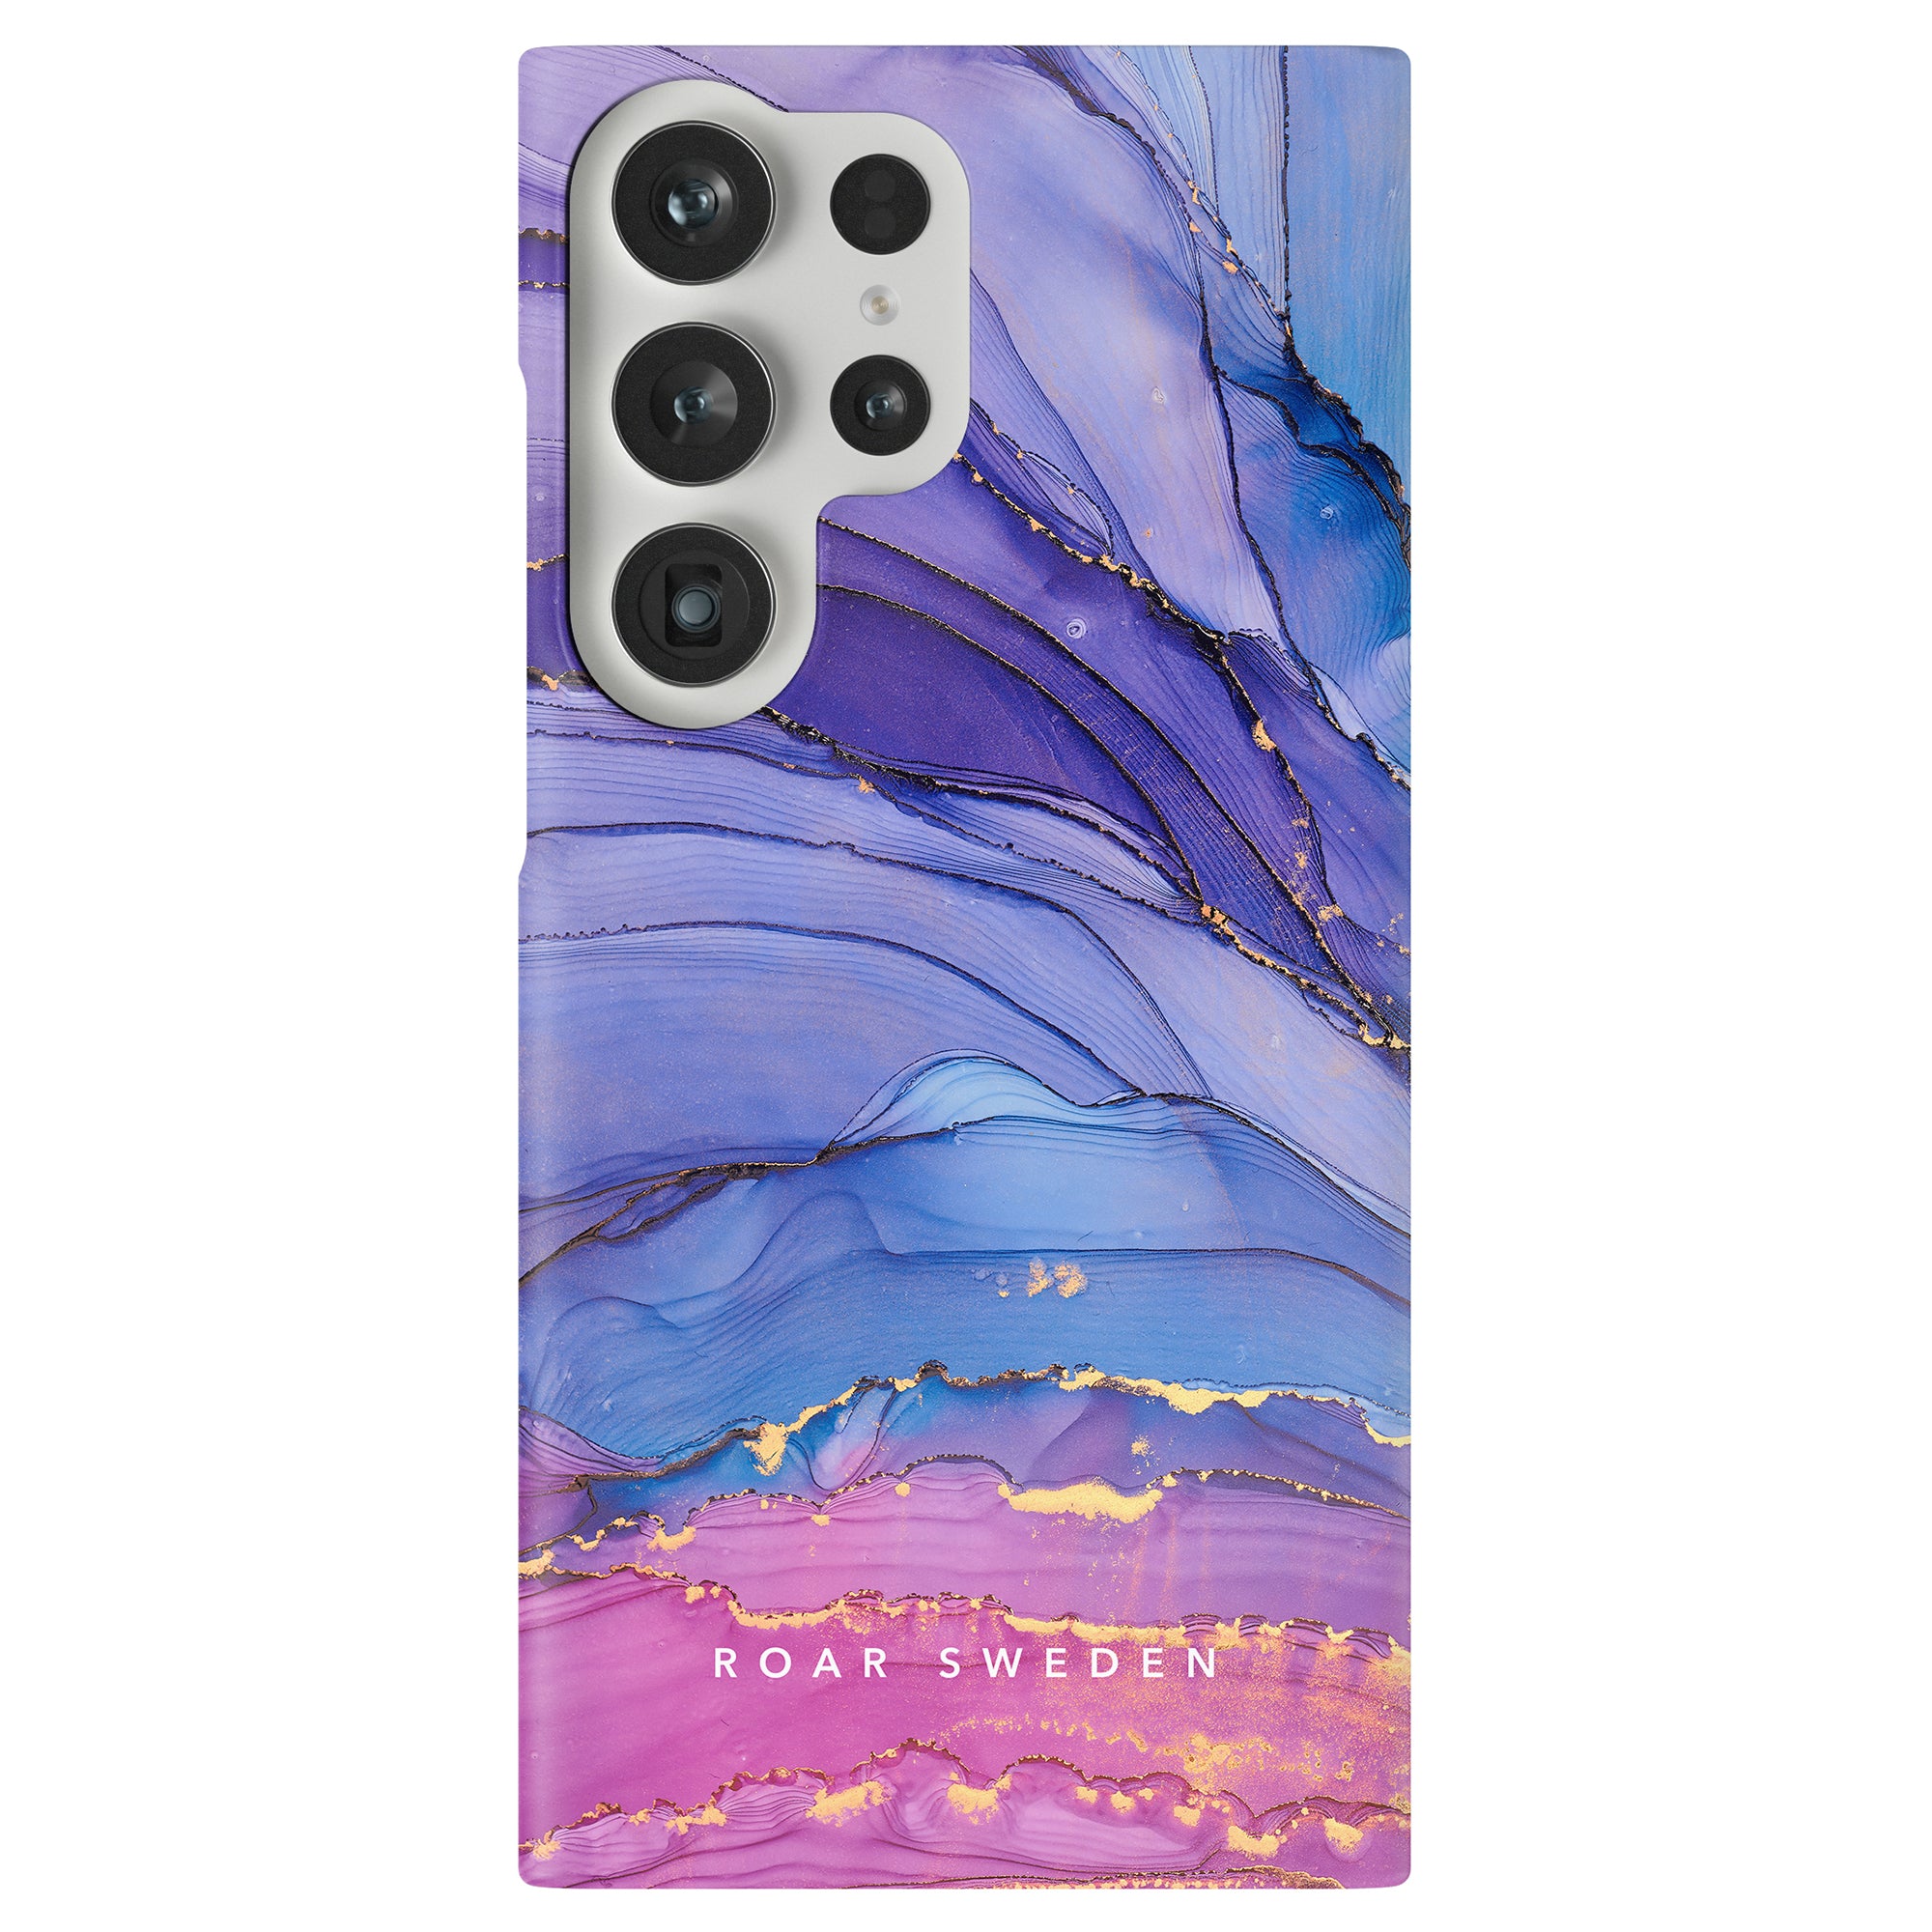 Beskrivning: Dreamy - Slim case med ett marmormönster i lila och blått.